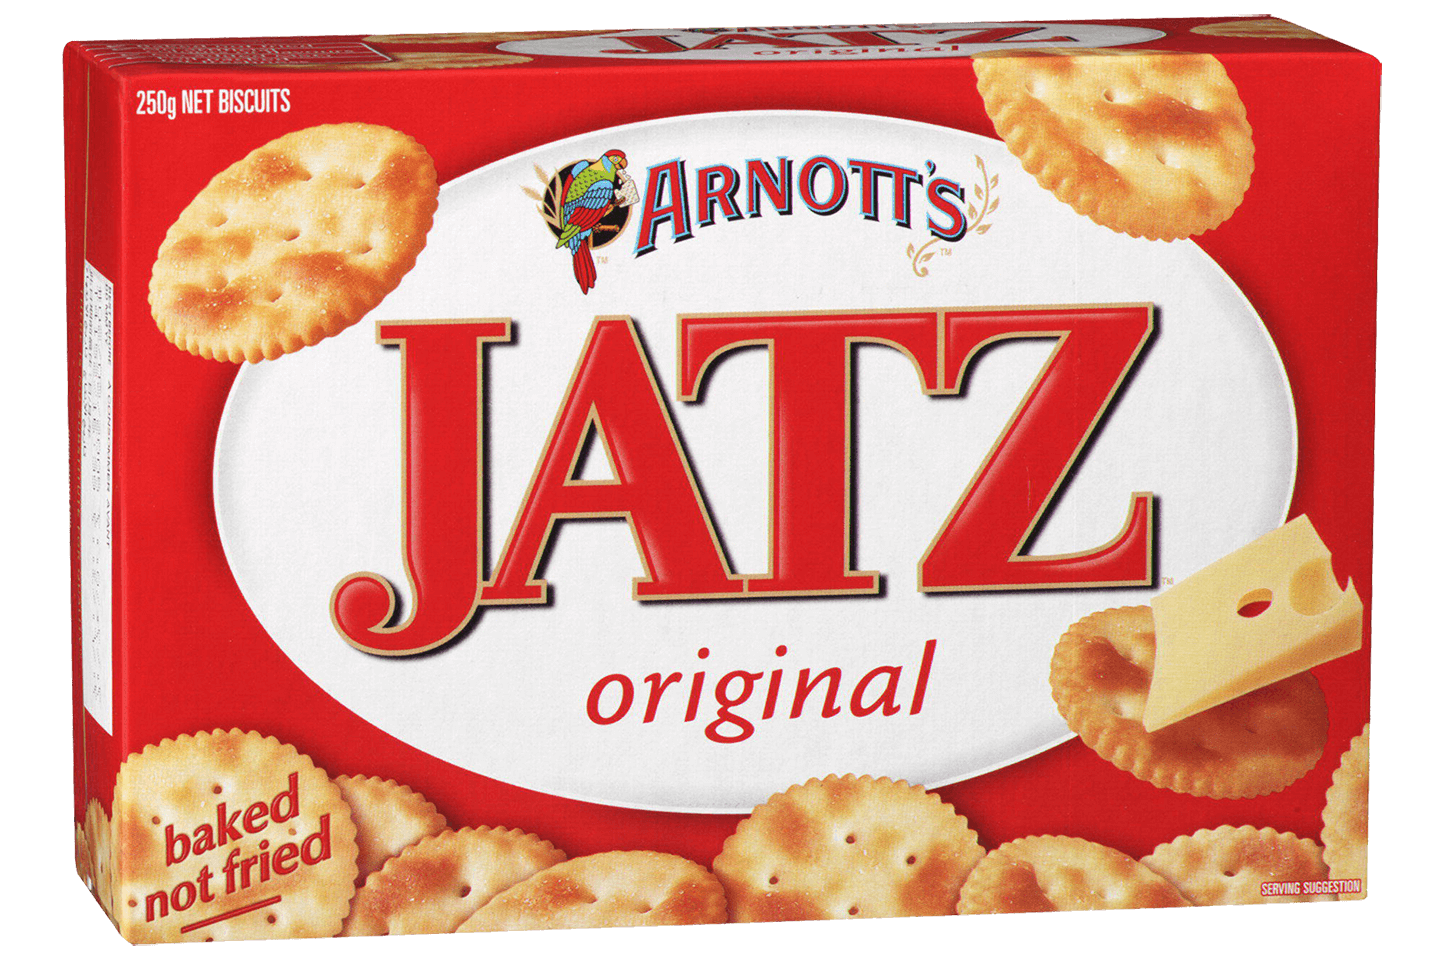 Jatz Original